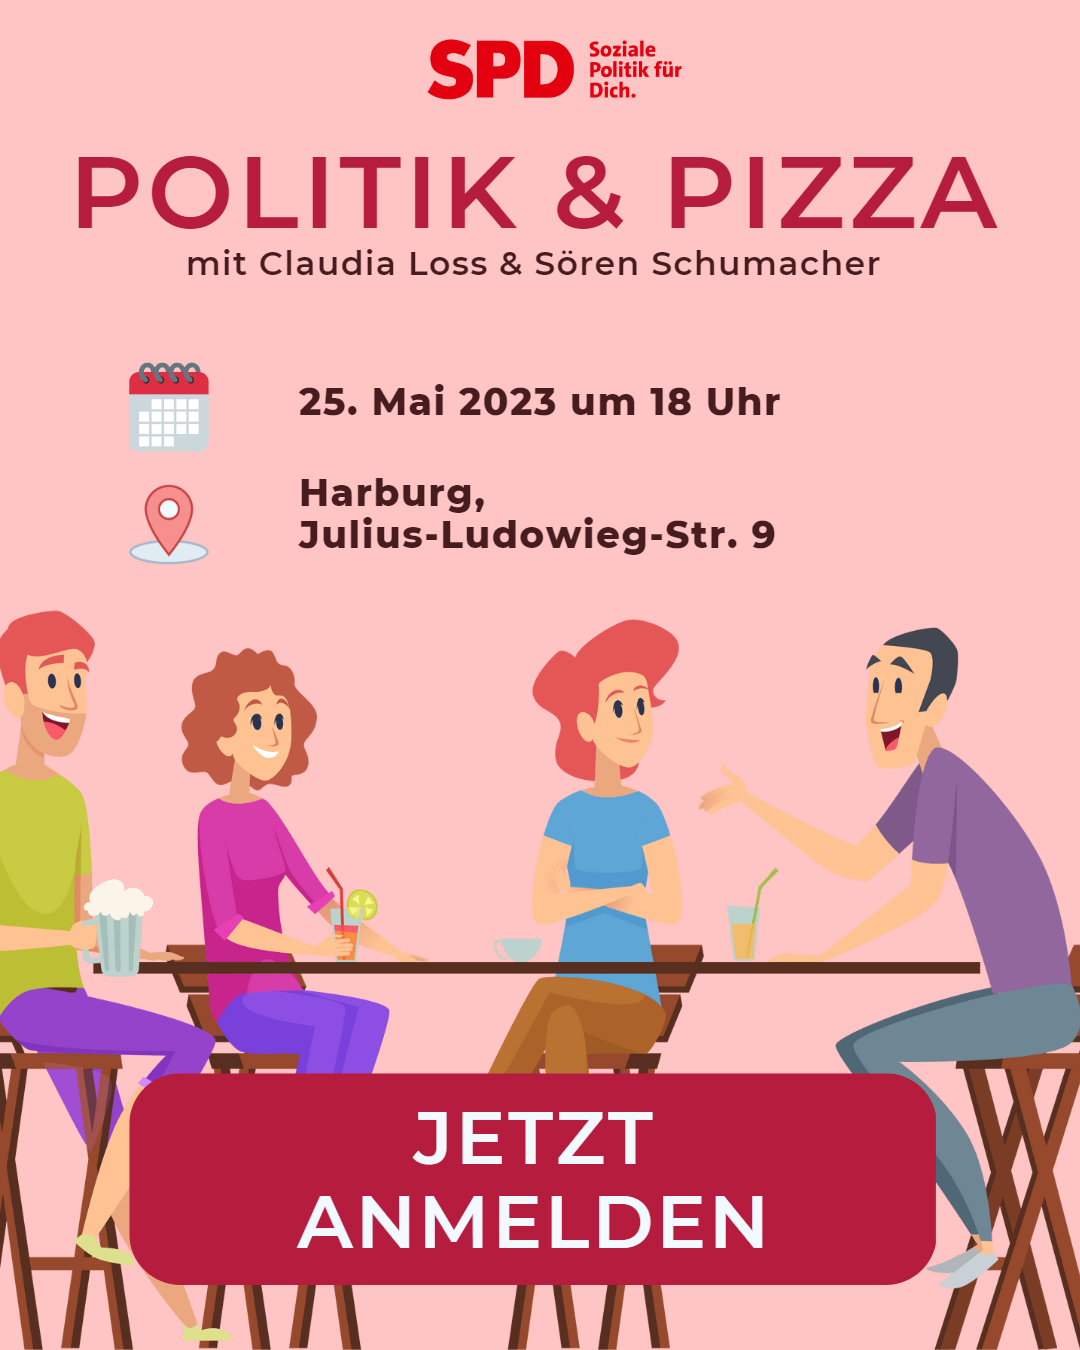 Politik & Pizza mit den SPD-Abgeordneten Claudia Loss und Sören Schumacher